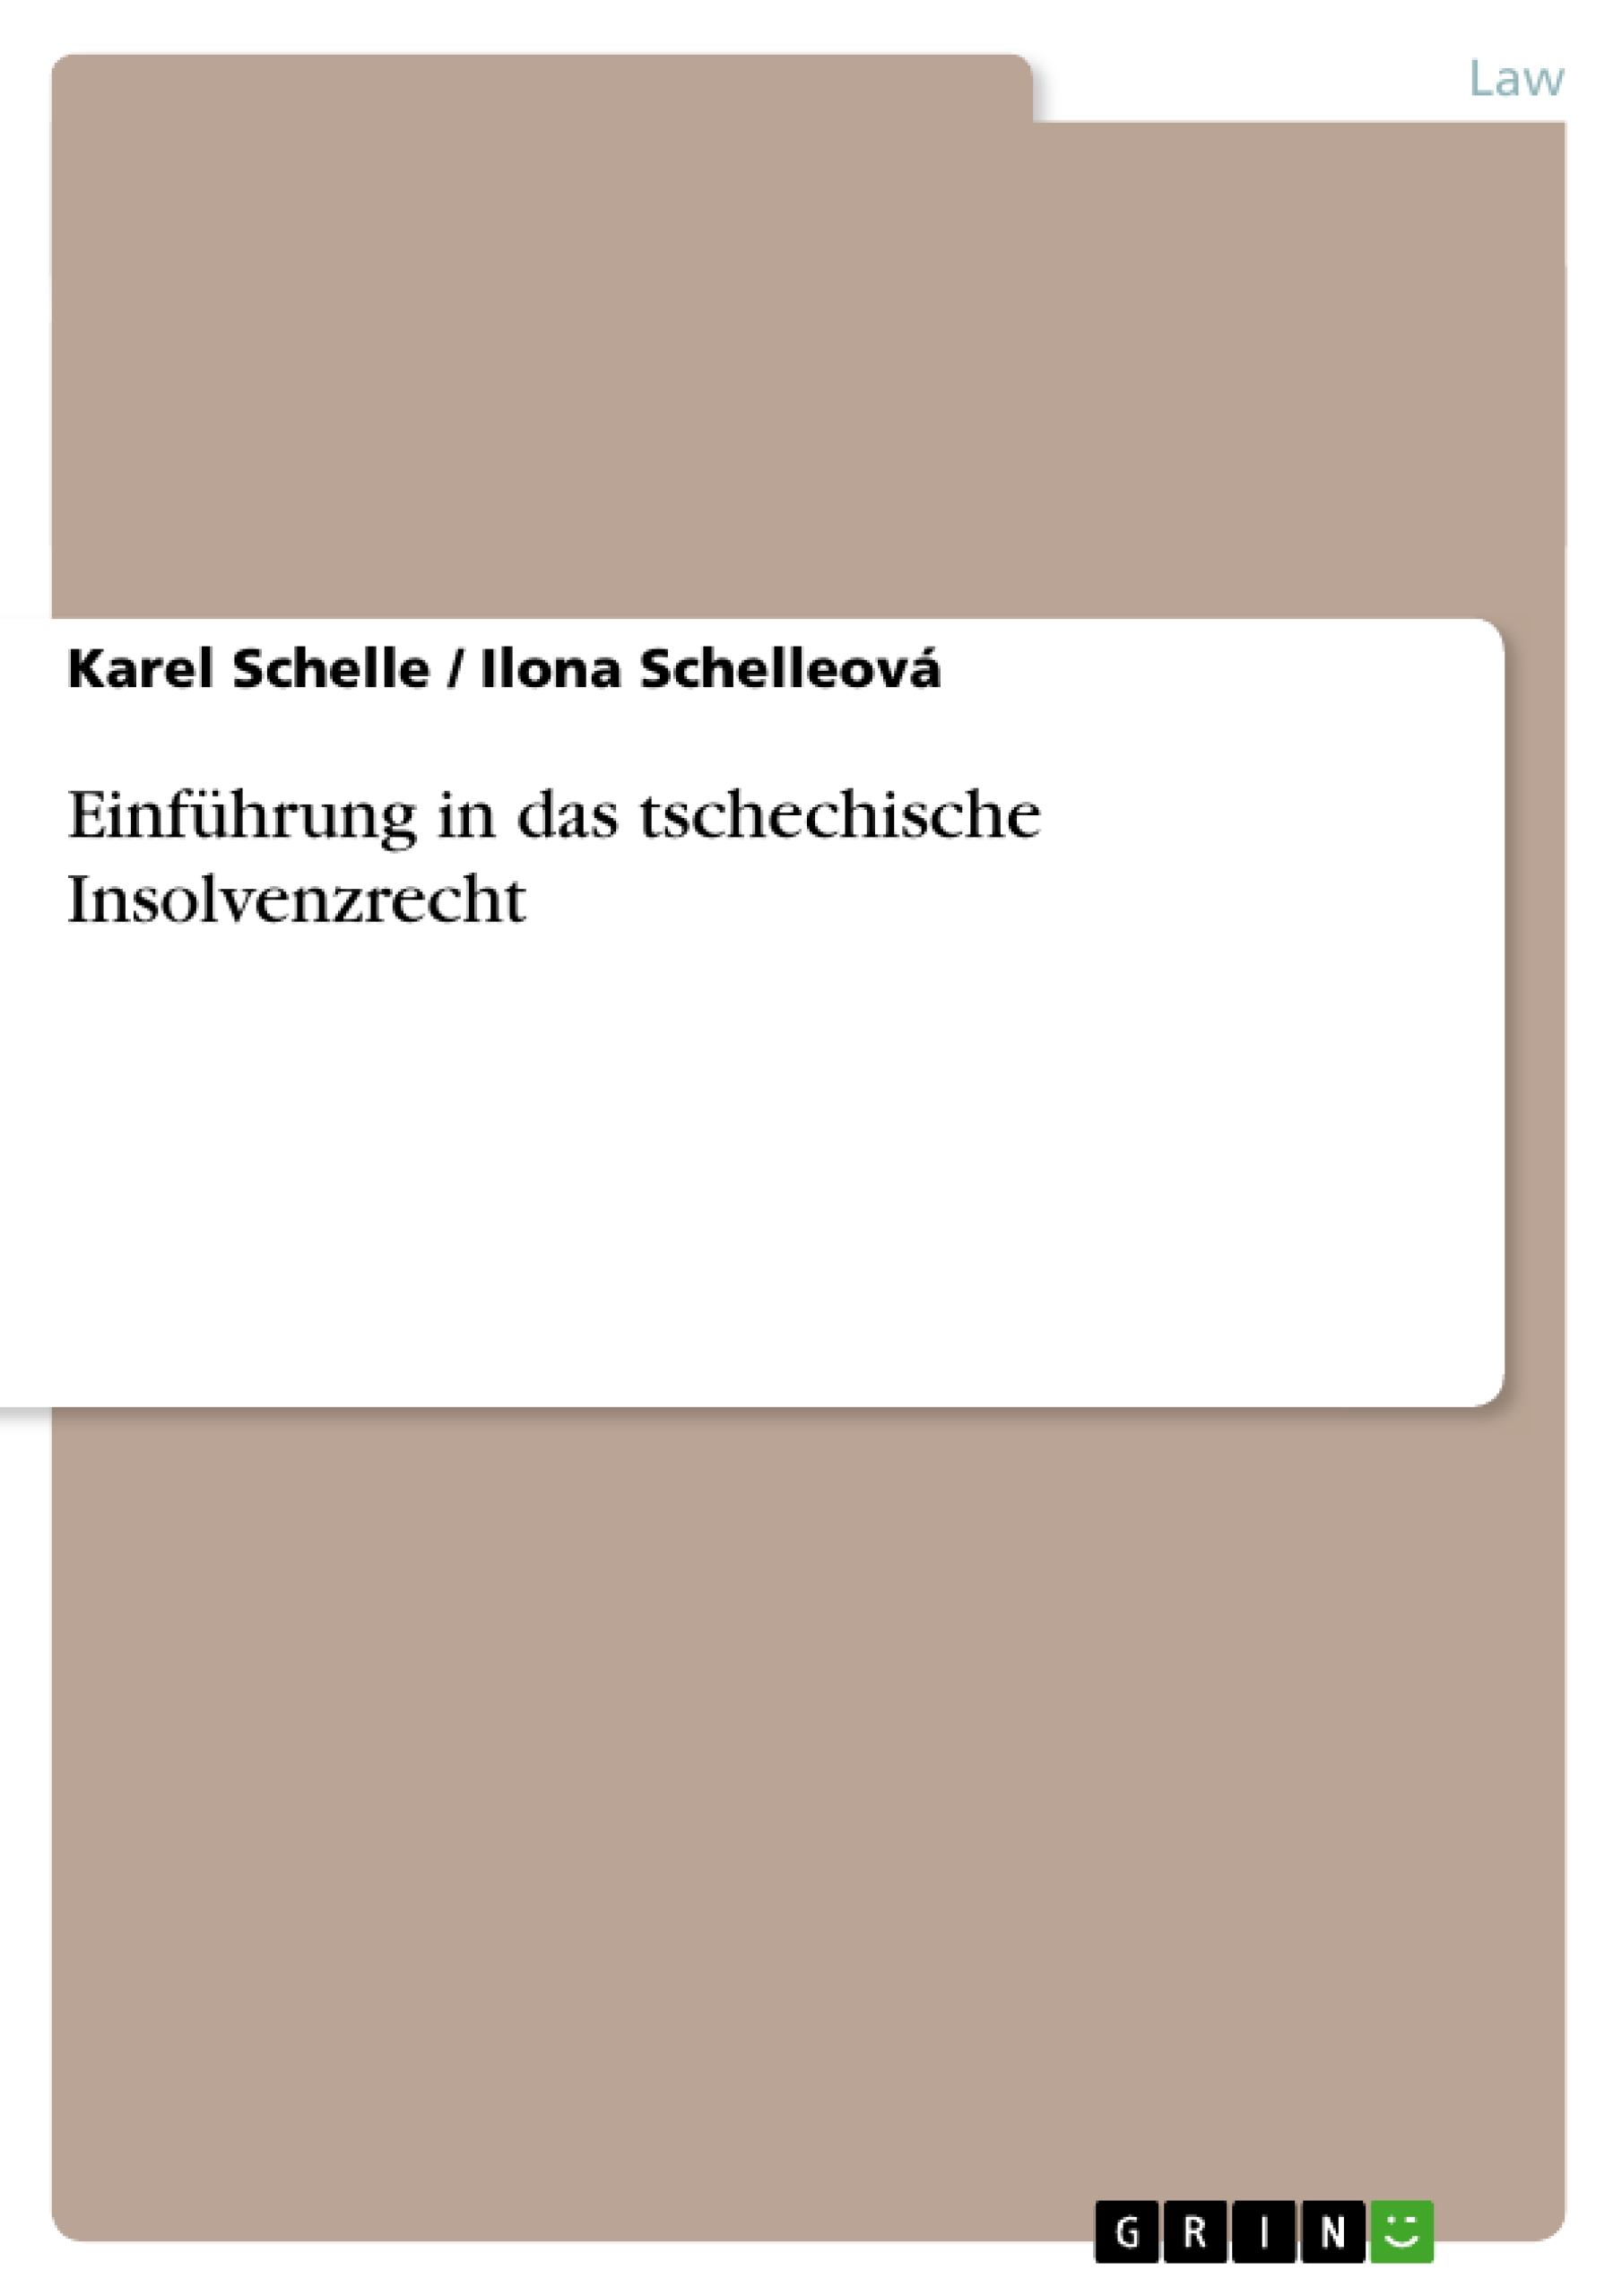 Einfuehrung in das tschechische Insolvenzrecht - Schelle, Karel Schelleová, Ilona